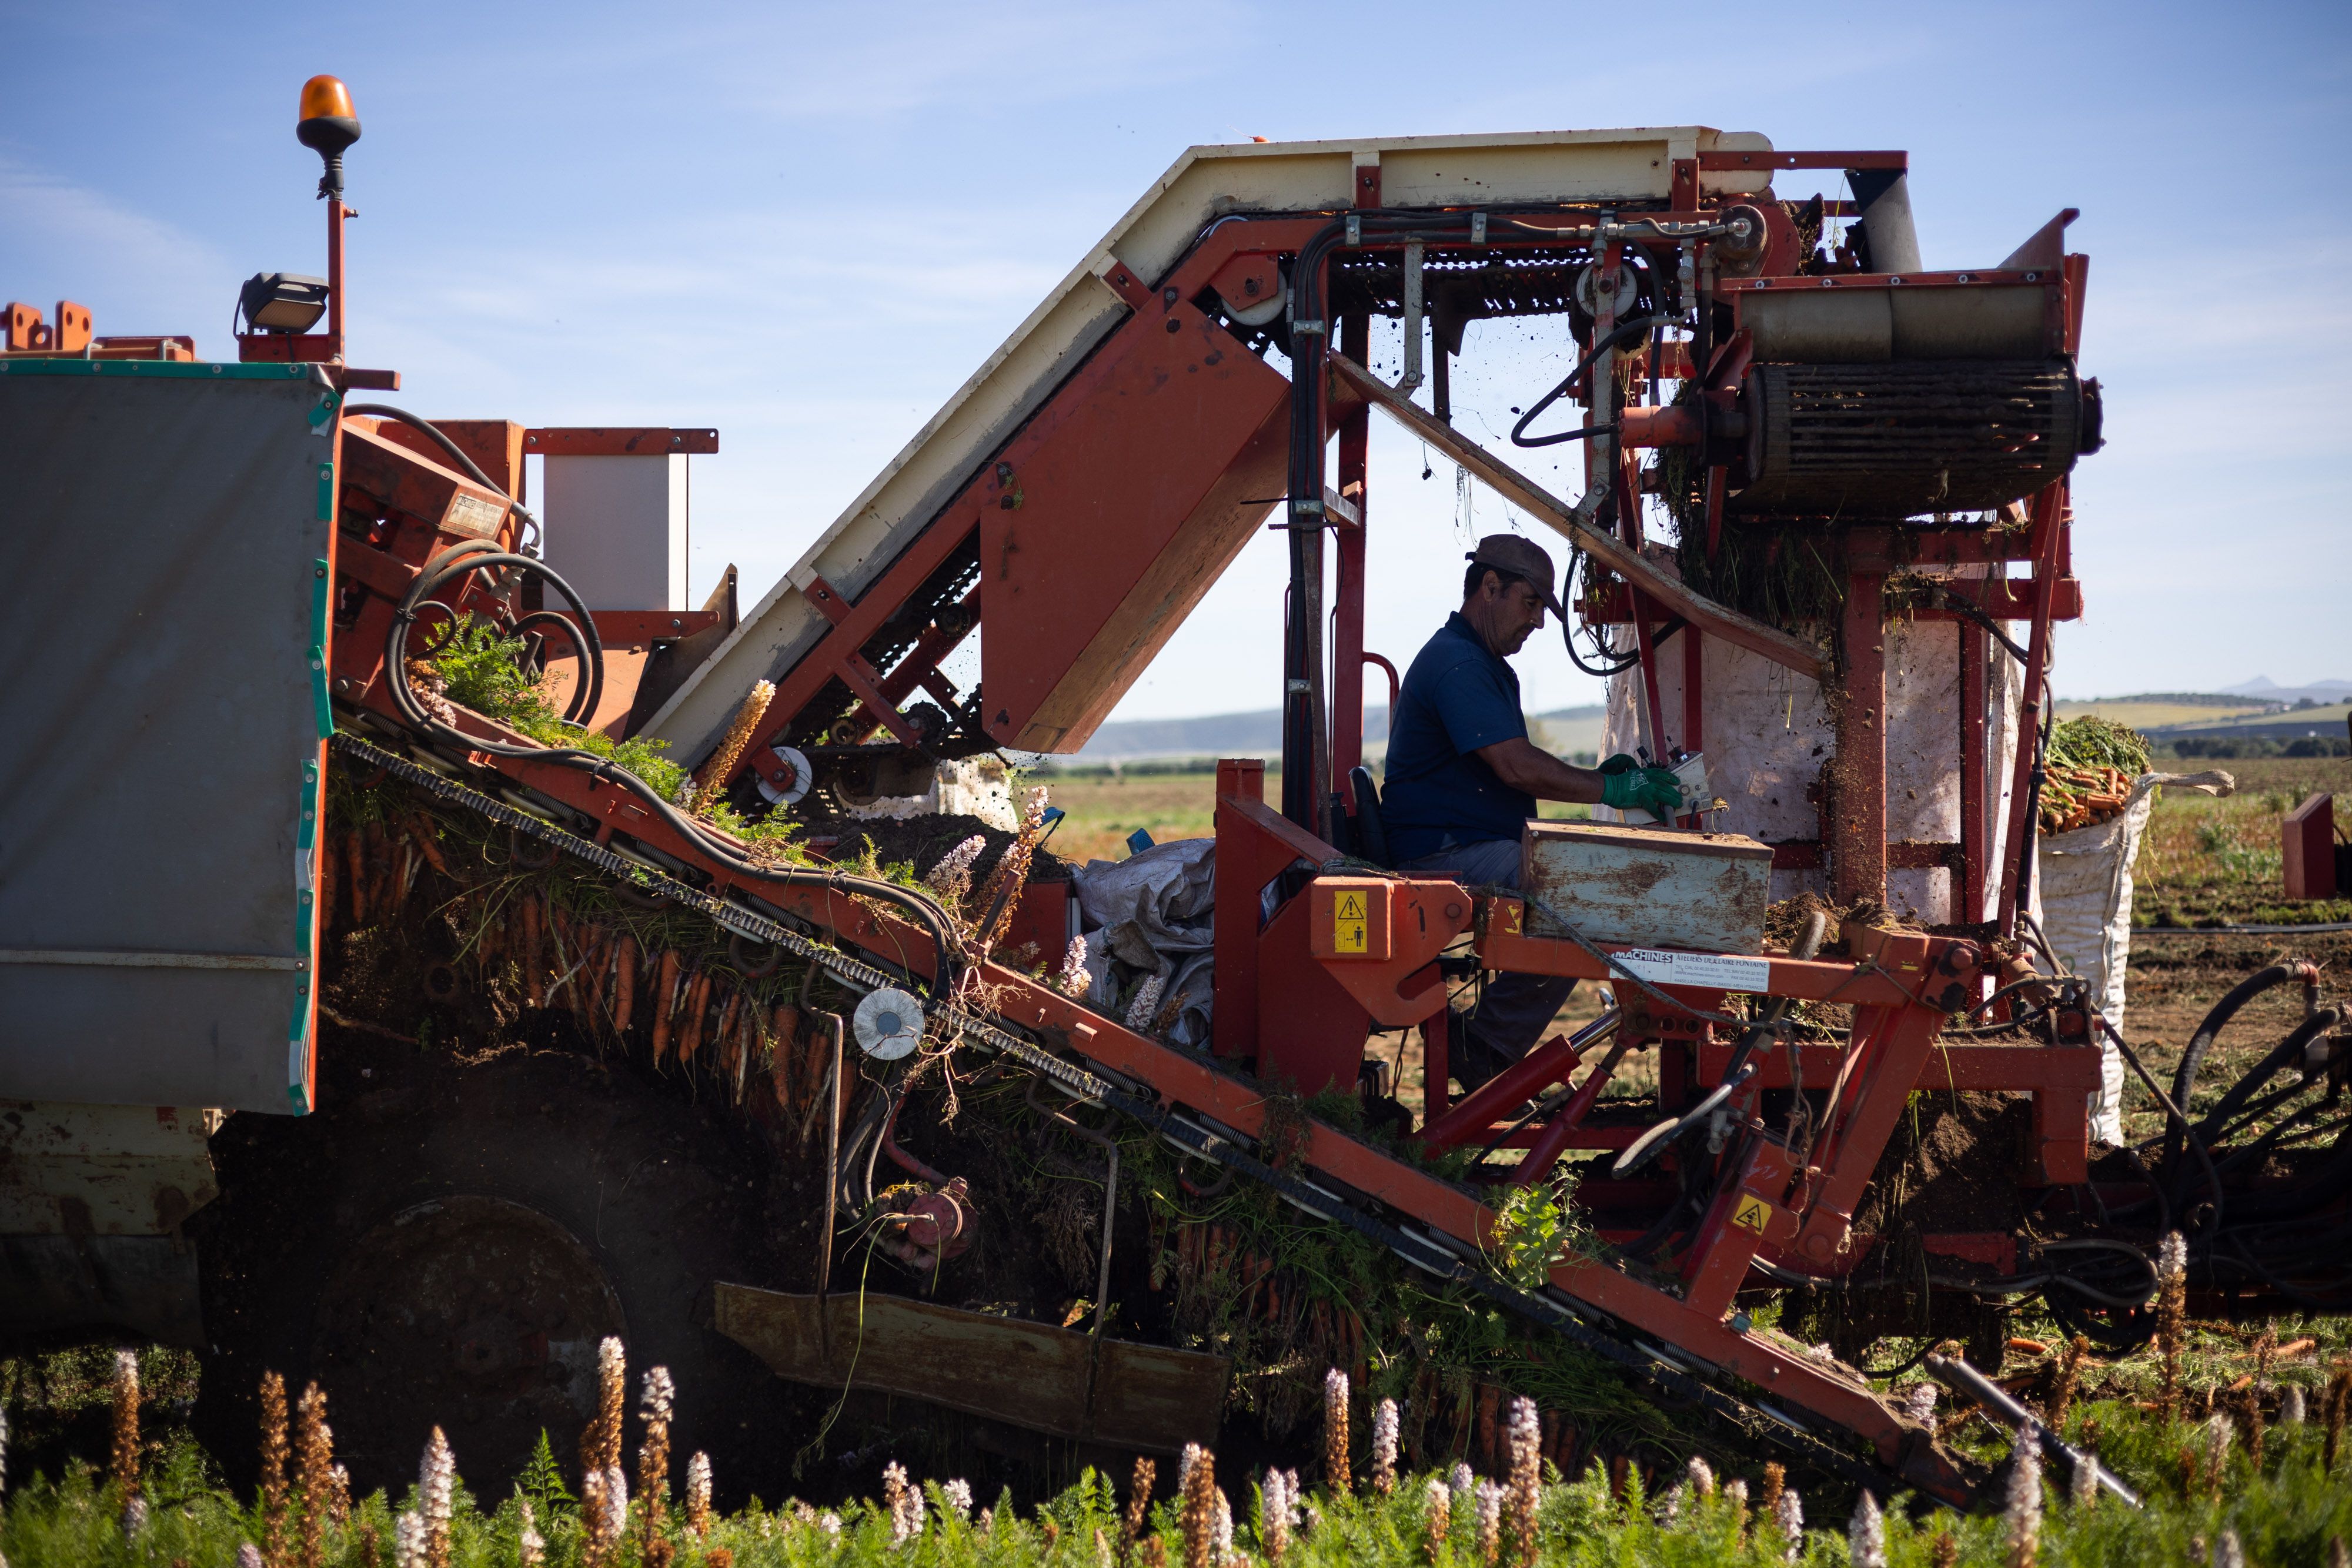 Trabajadores recogen la cosecha sembrada en Andalucía. Europa: la misma con los mismos